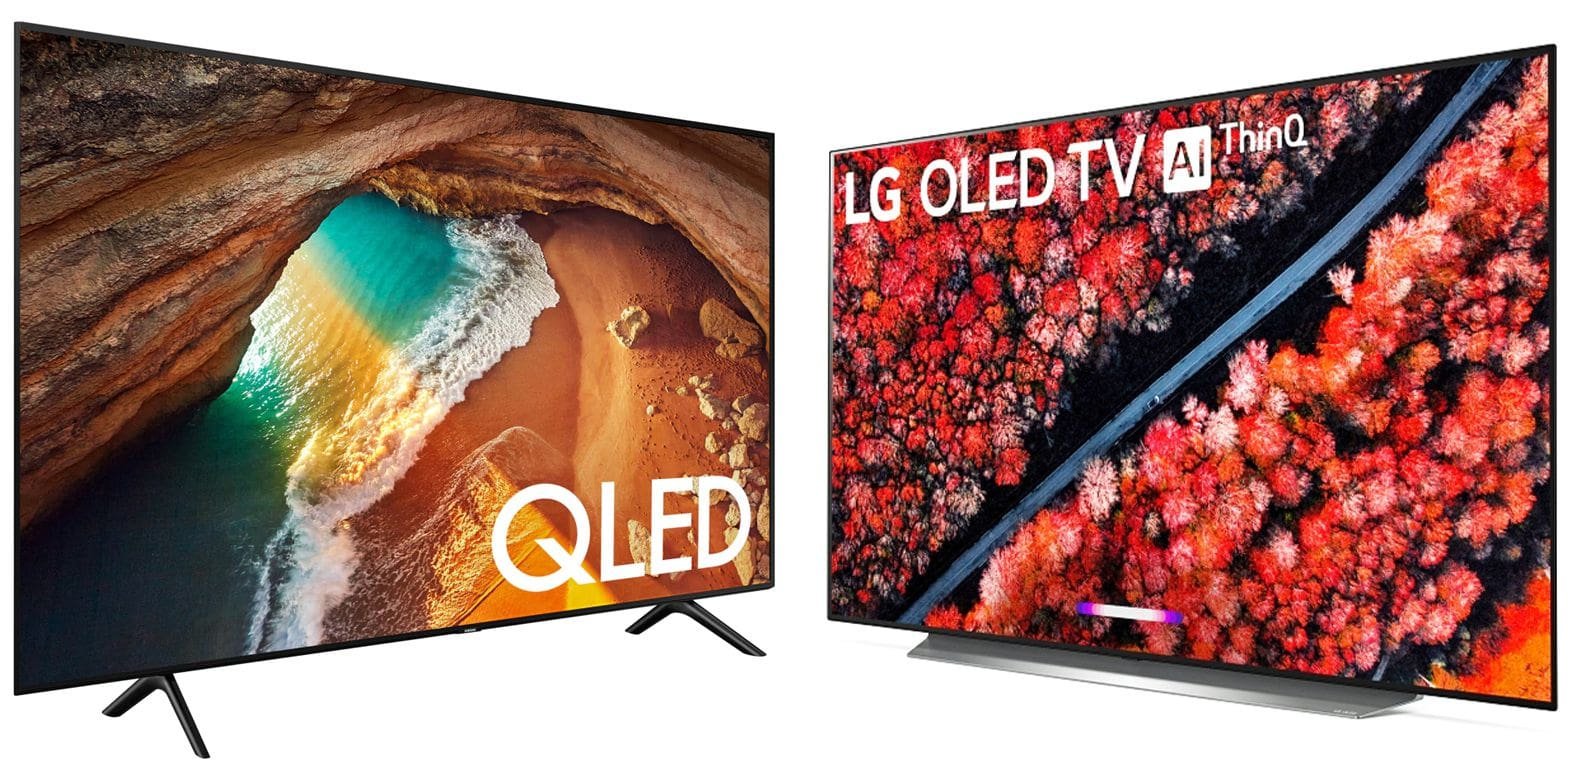 Какой Купить Телевизор Lg Или Samsung